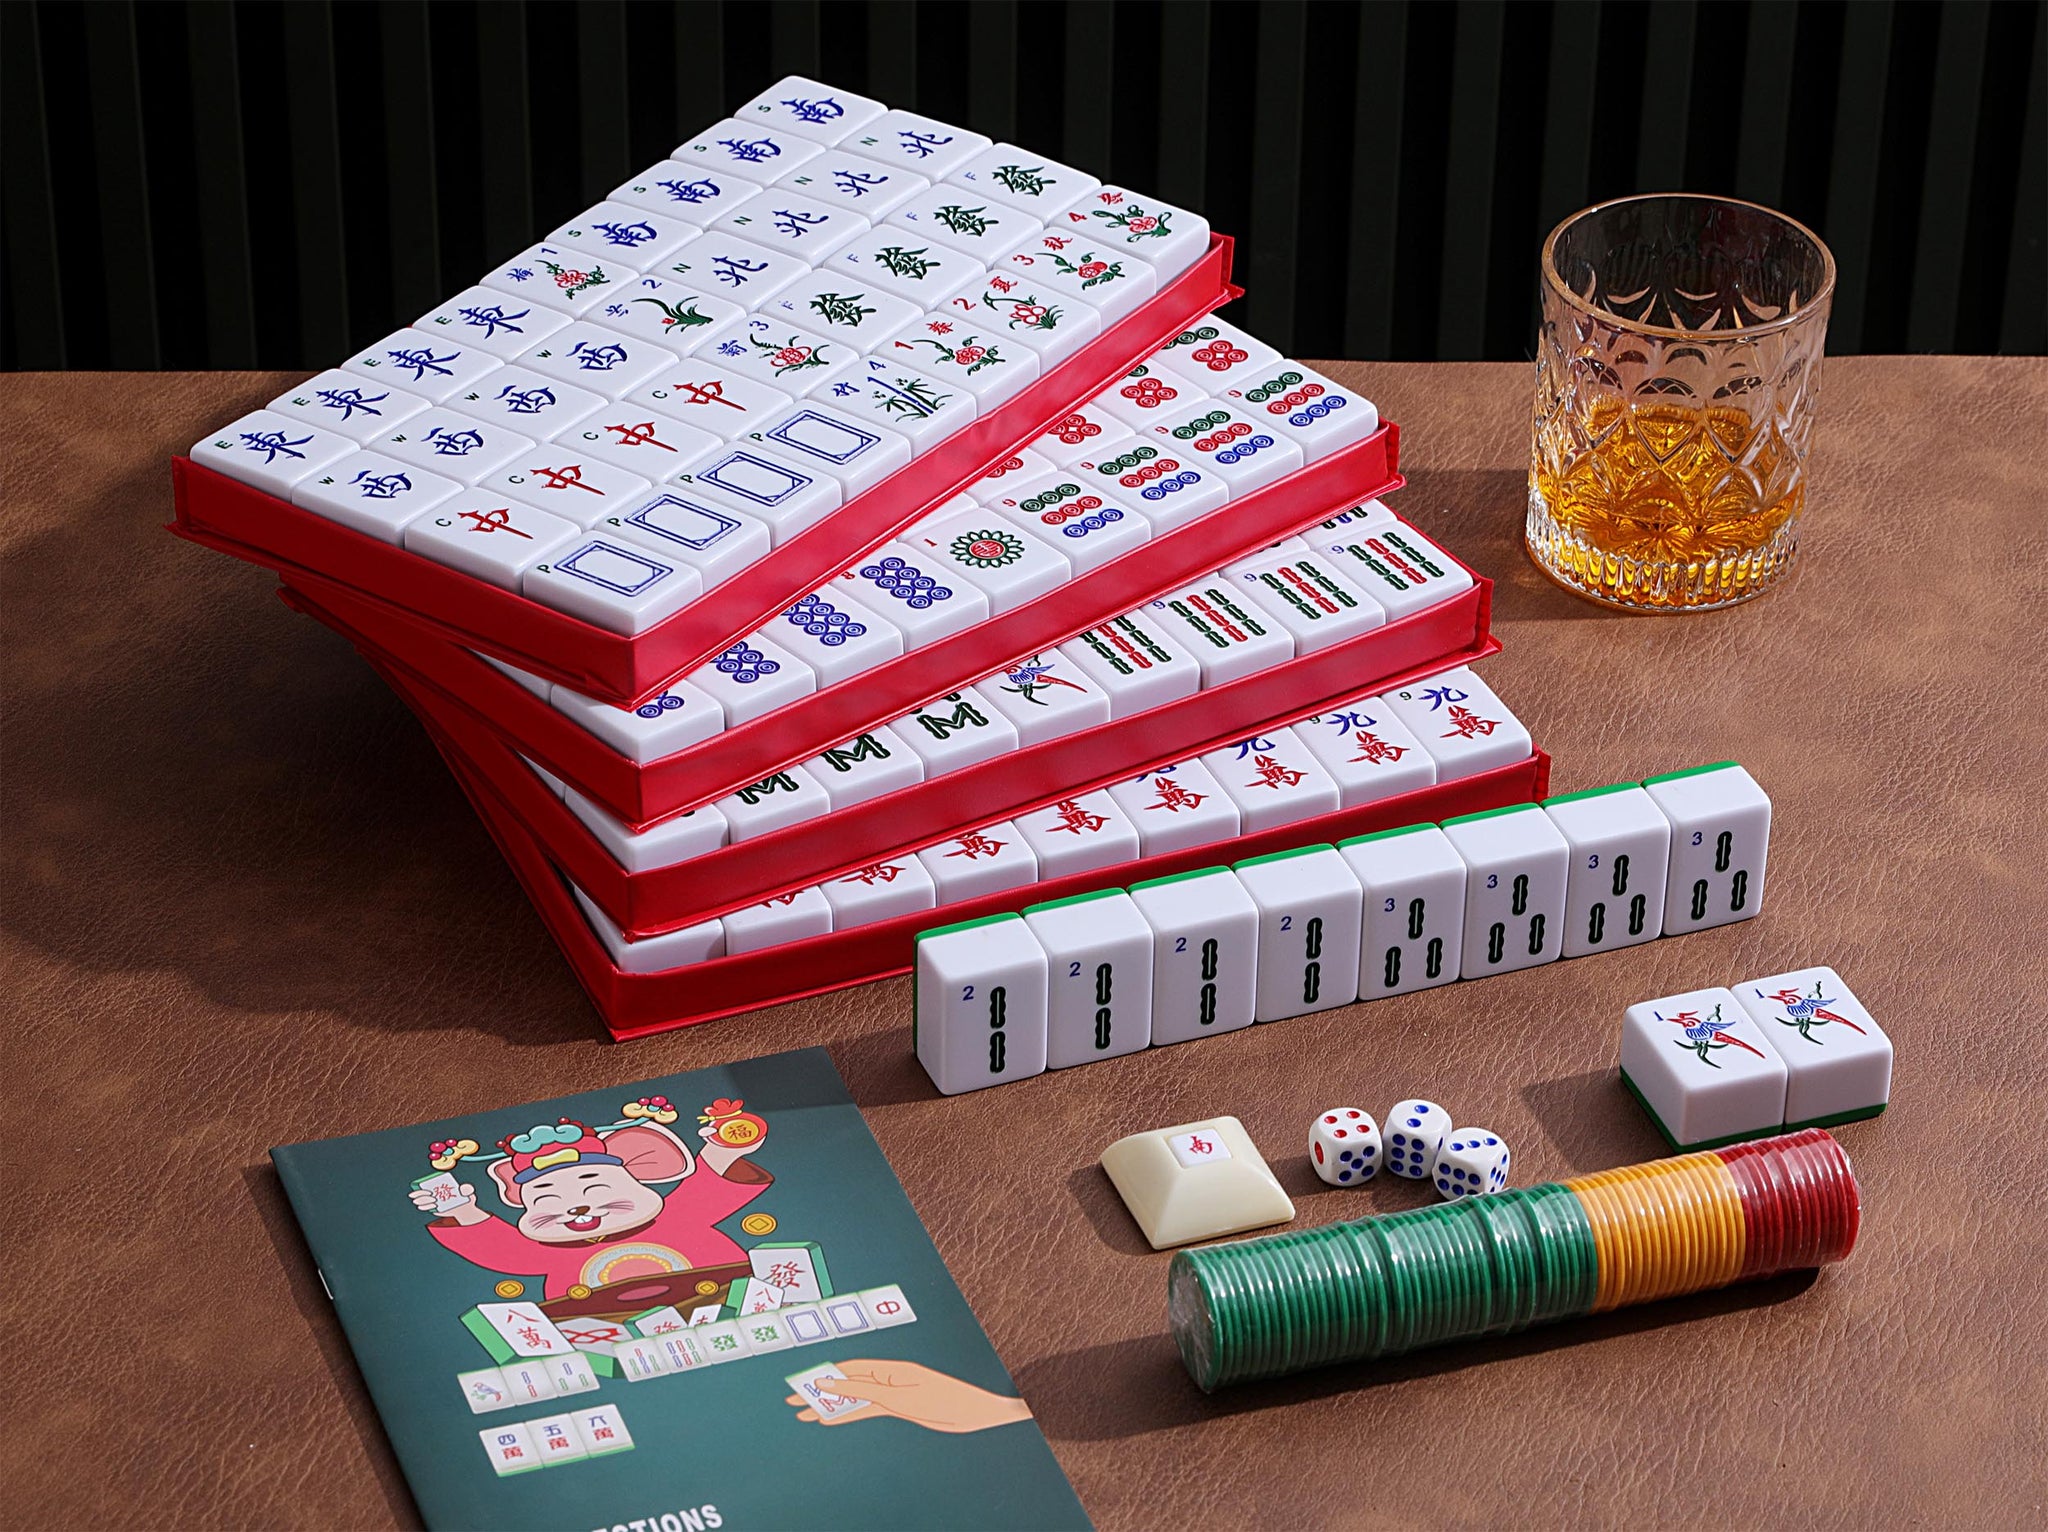 Tile Mahjong - Play Free Game at Friv5